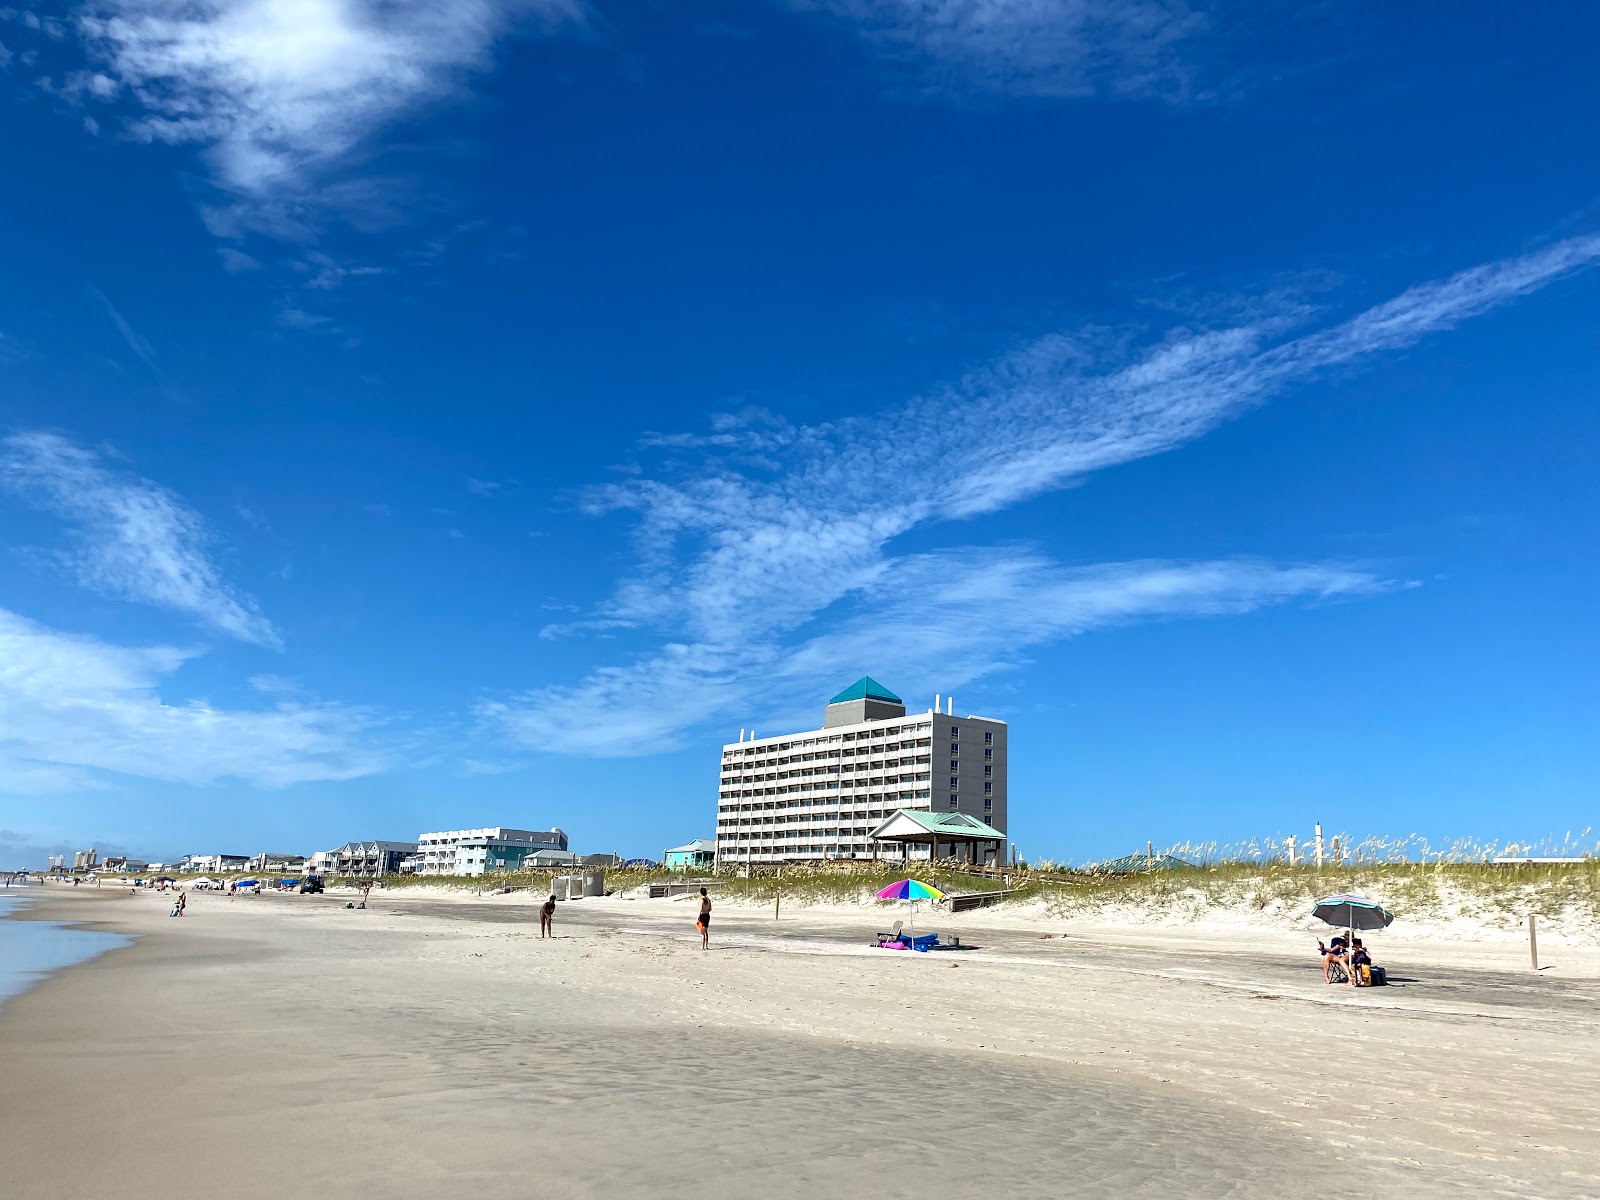 Photo de Carolina beach - endroit populaire parmi les connaisseurs de la détente